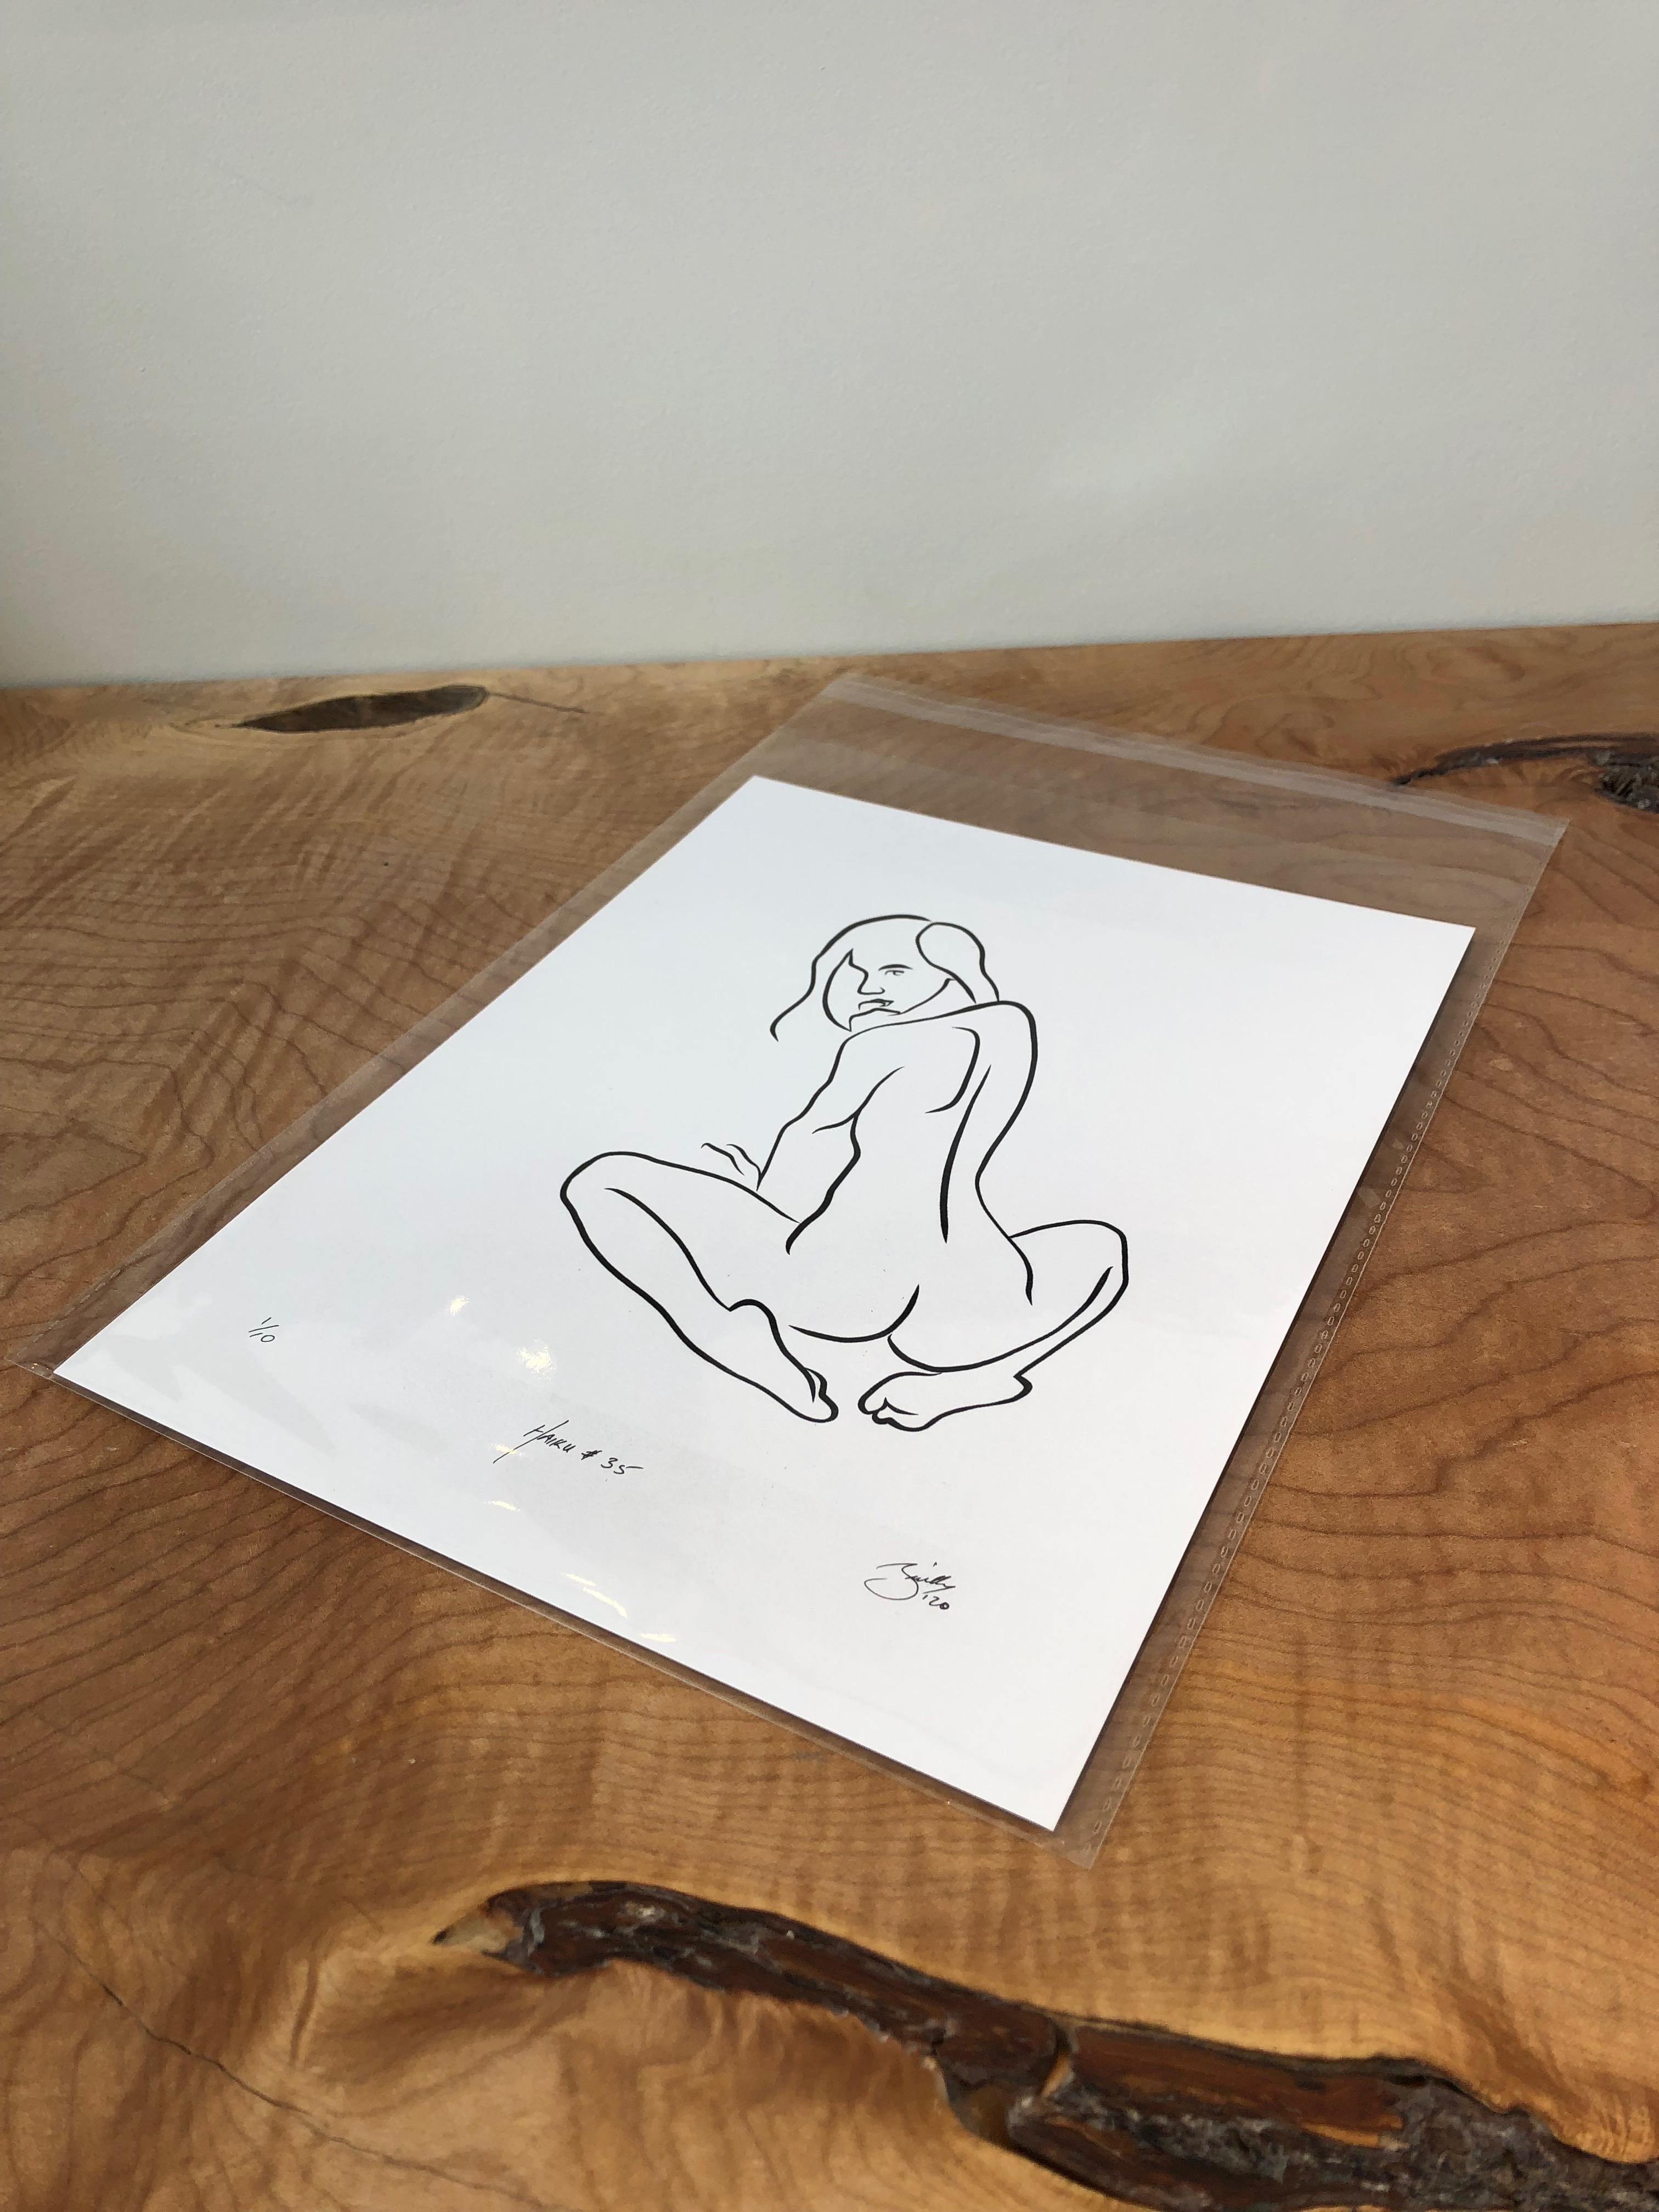 Haiku n°35, 1/50, dessin numérique représentant une femme nue assise et regardant - Print de Michael Binkley